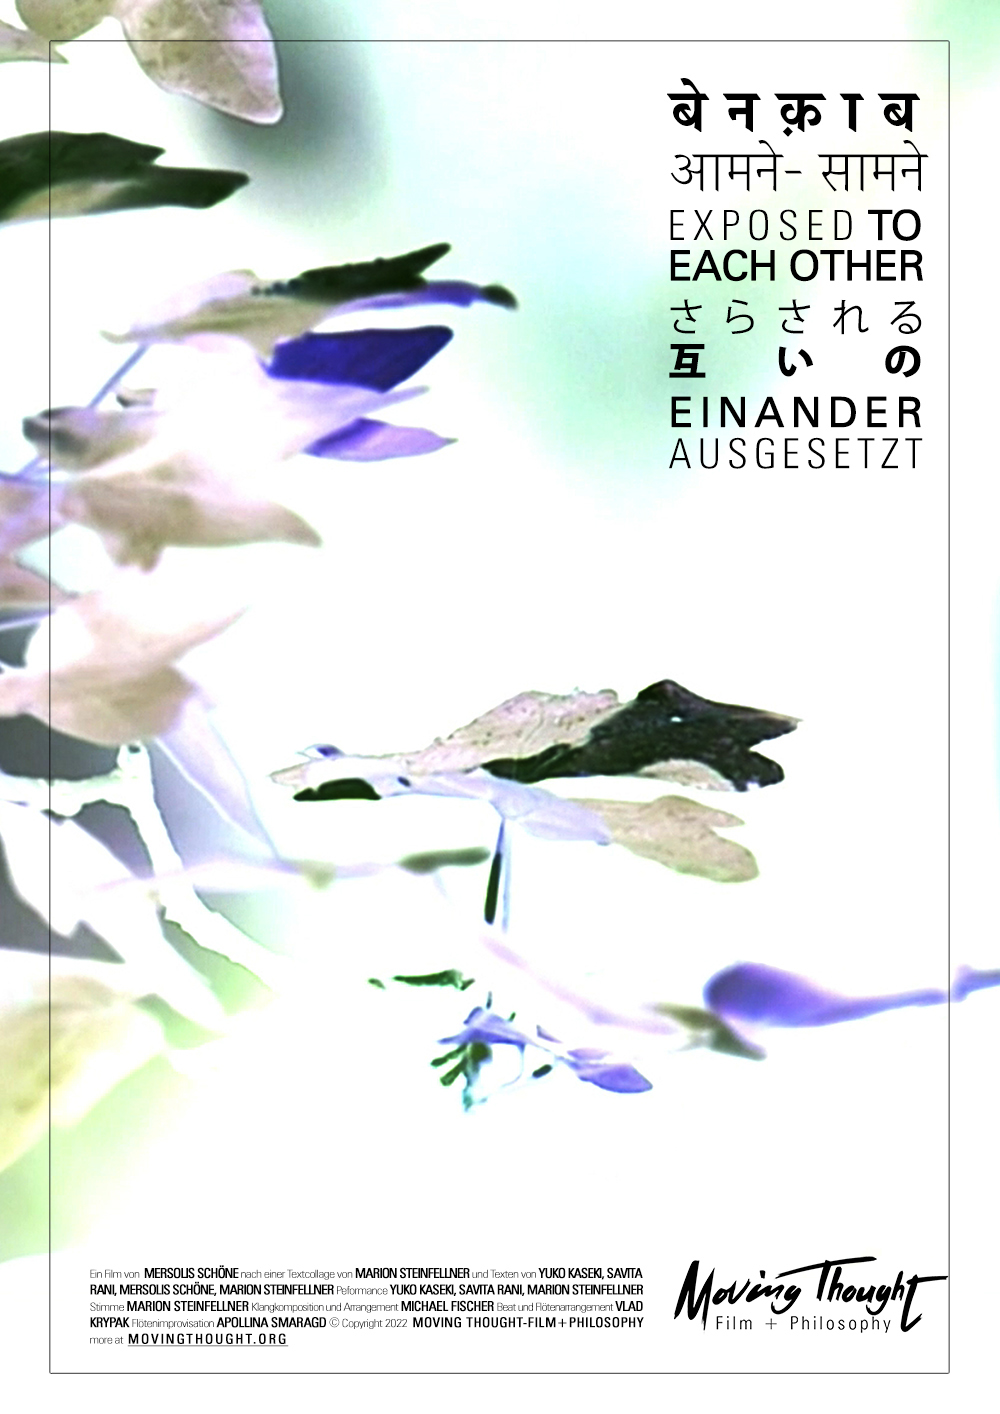 Exposed To Each Other (Still) - by Mersolis Schöne with Yuko Kaseki, Savita Rani, Marion Steinfellner, and Michael Fischer